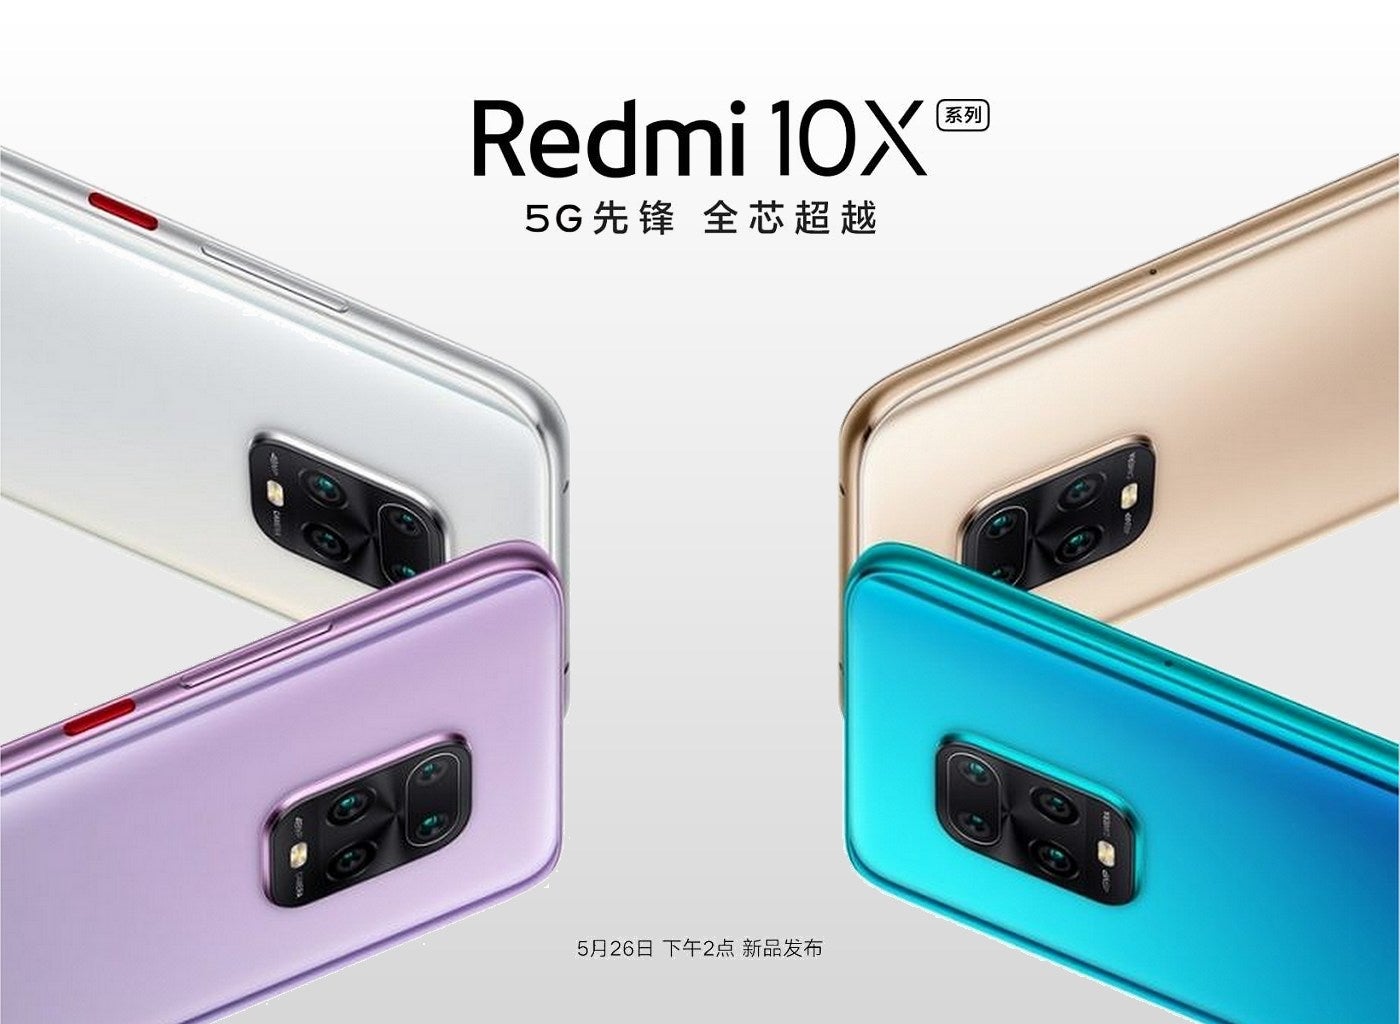 搭载联发科DIMENSITY 820 SOC的REDMI 10X将于5月26日正式上市